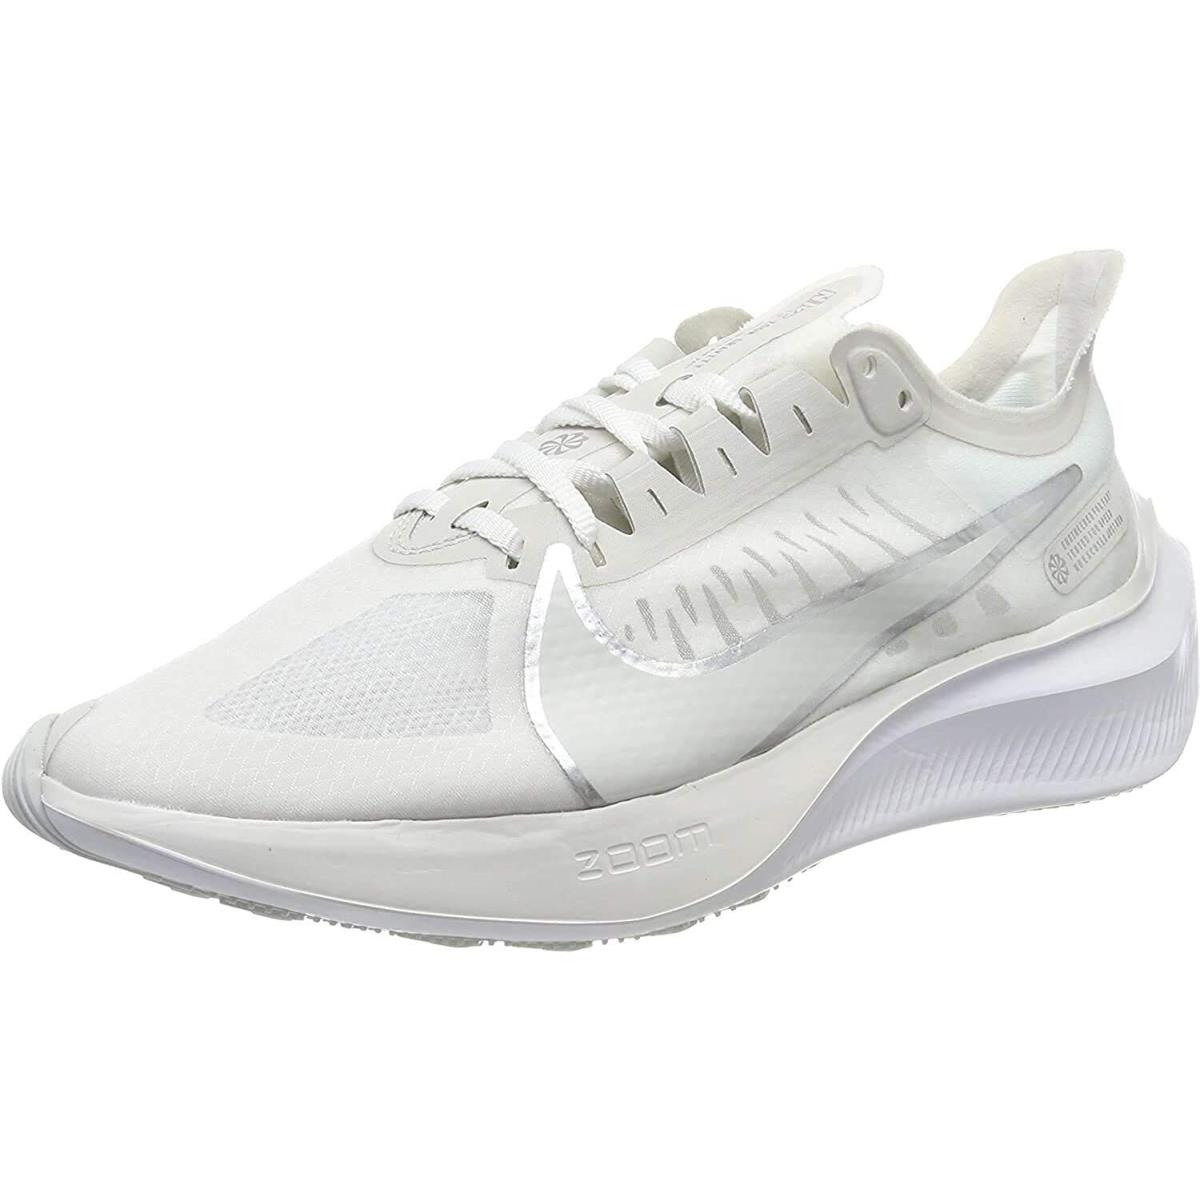 Nike shoes Shox Gravity - White 4